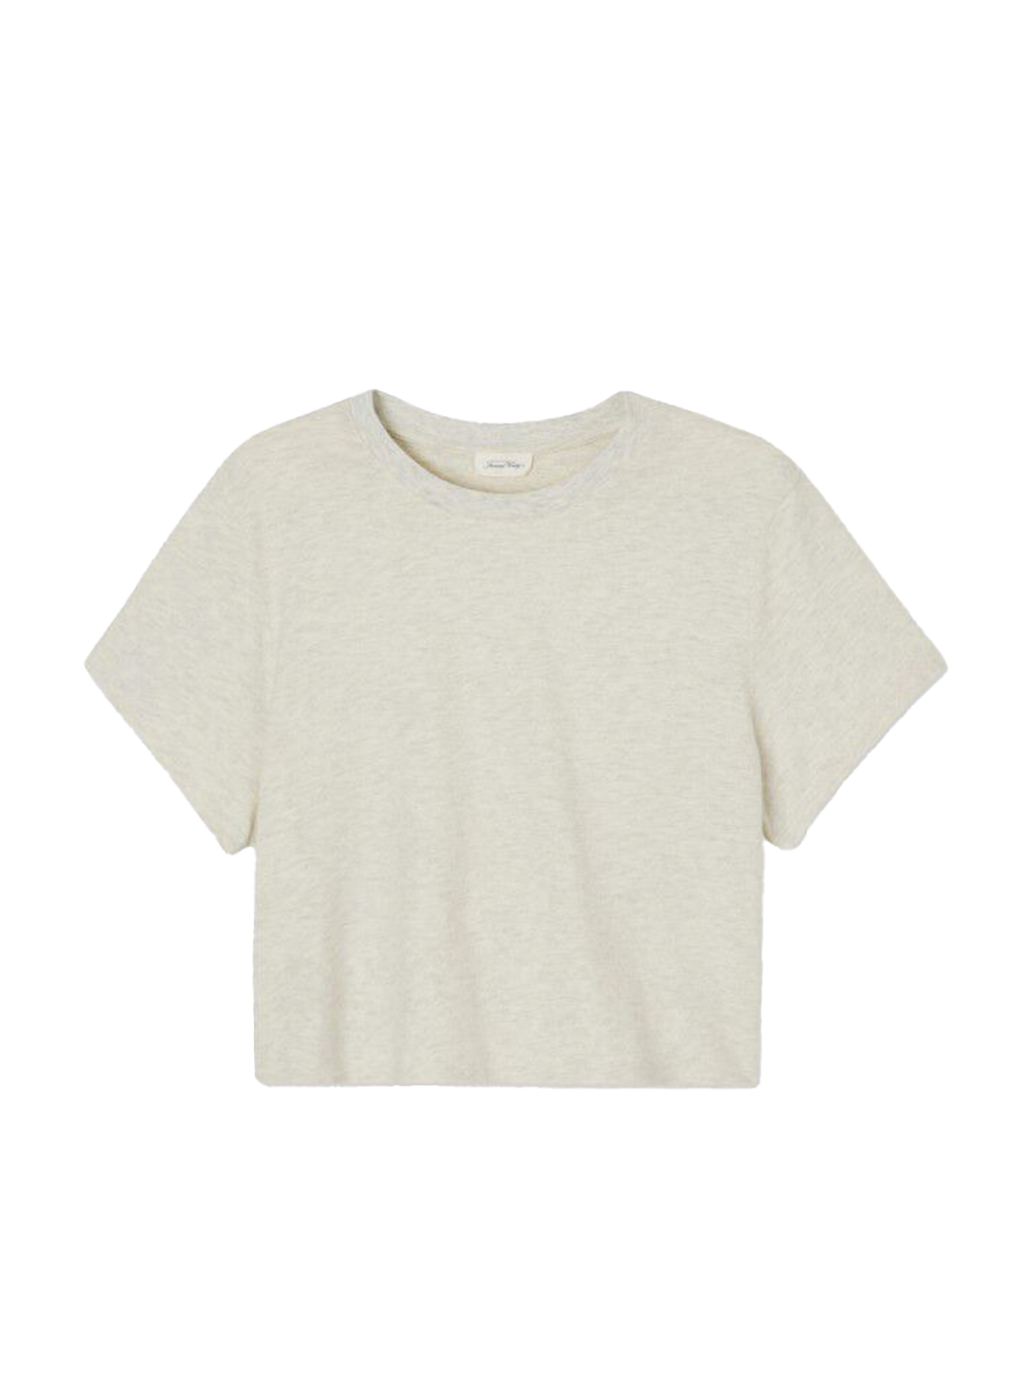 Camiseta confeccionada en suave tejido Ypawood